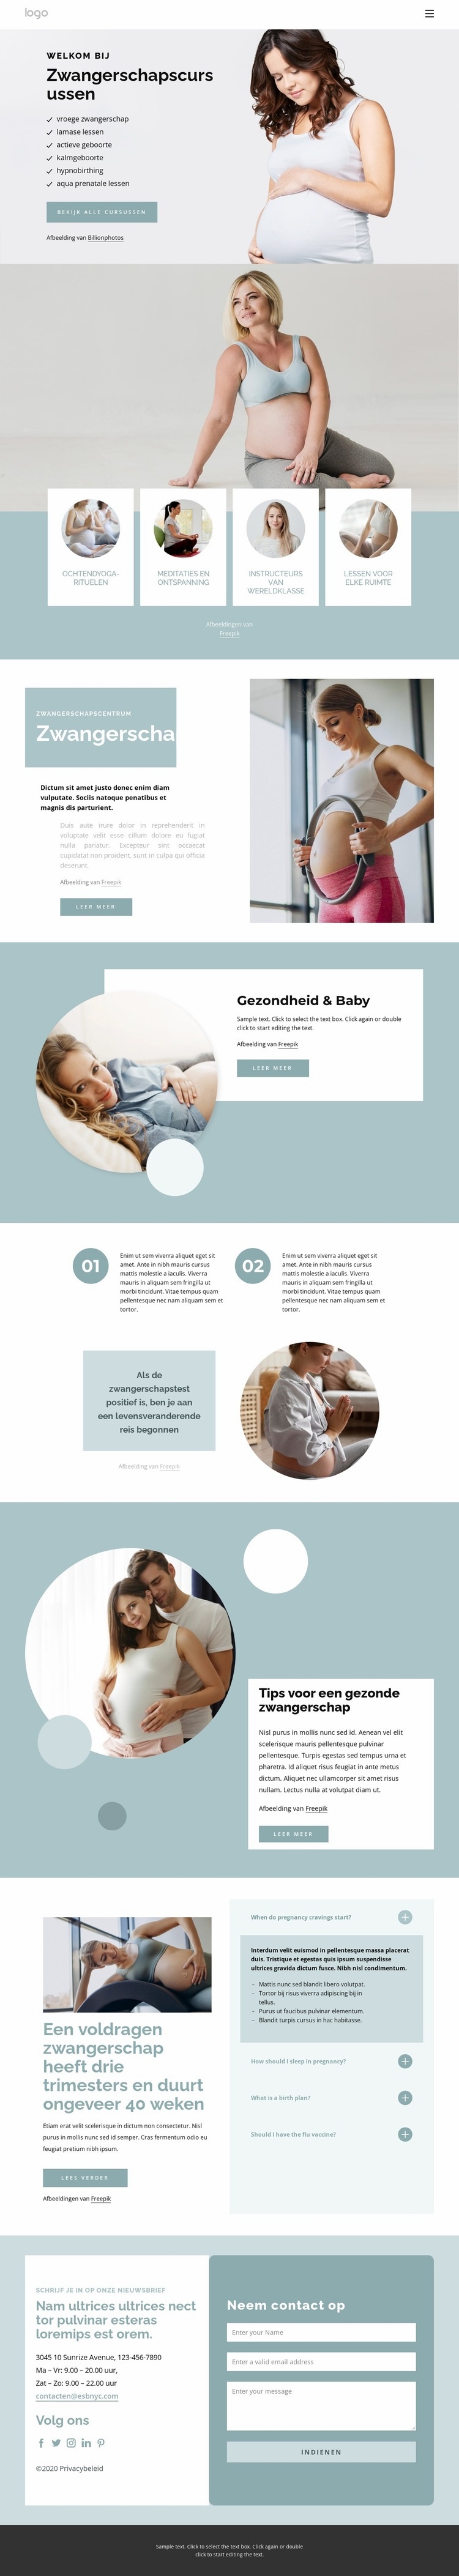 Prenatale gezondheid en voeding Website ontwerp